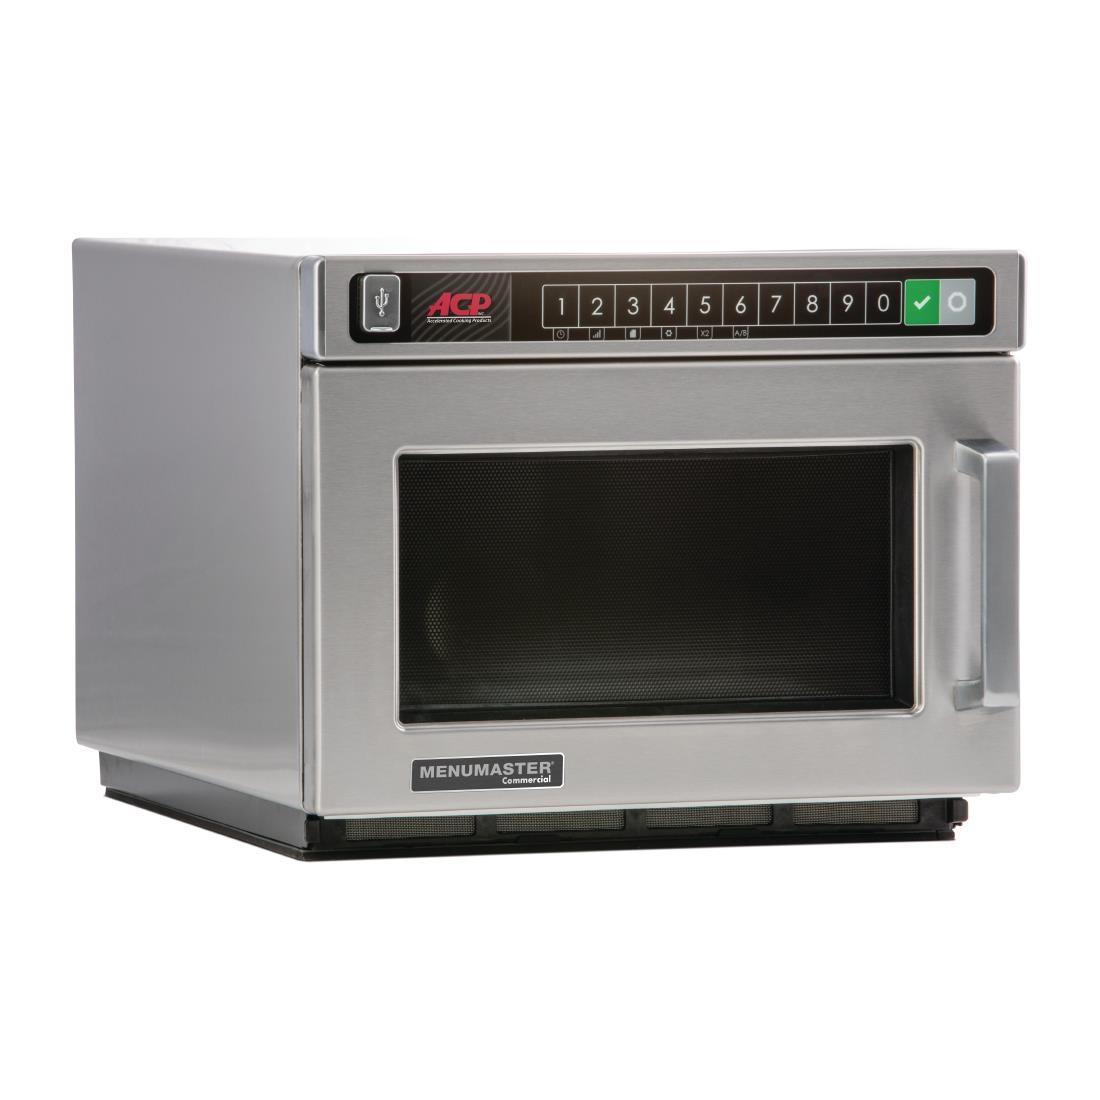 Menumaster Heavy Duty Programmable Microwave 17ltr 2100W DEC21E2 - CM734  - 1